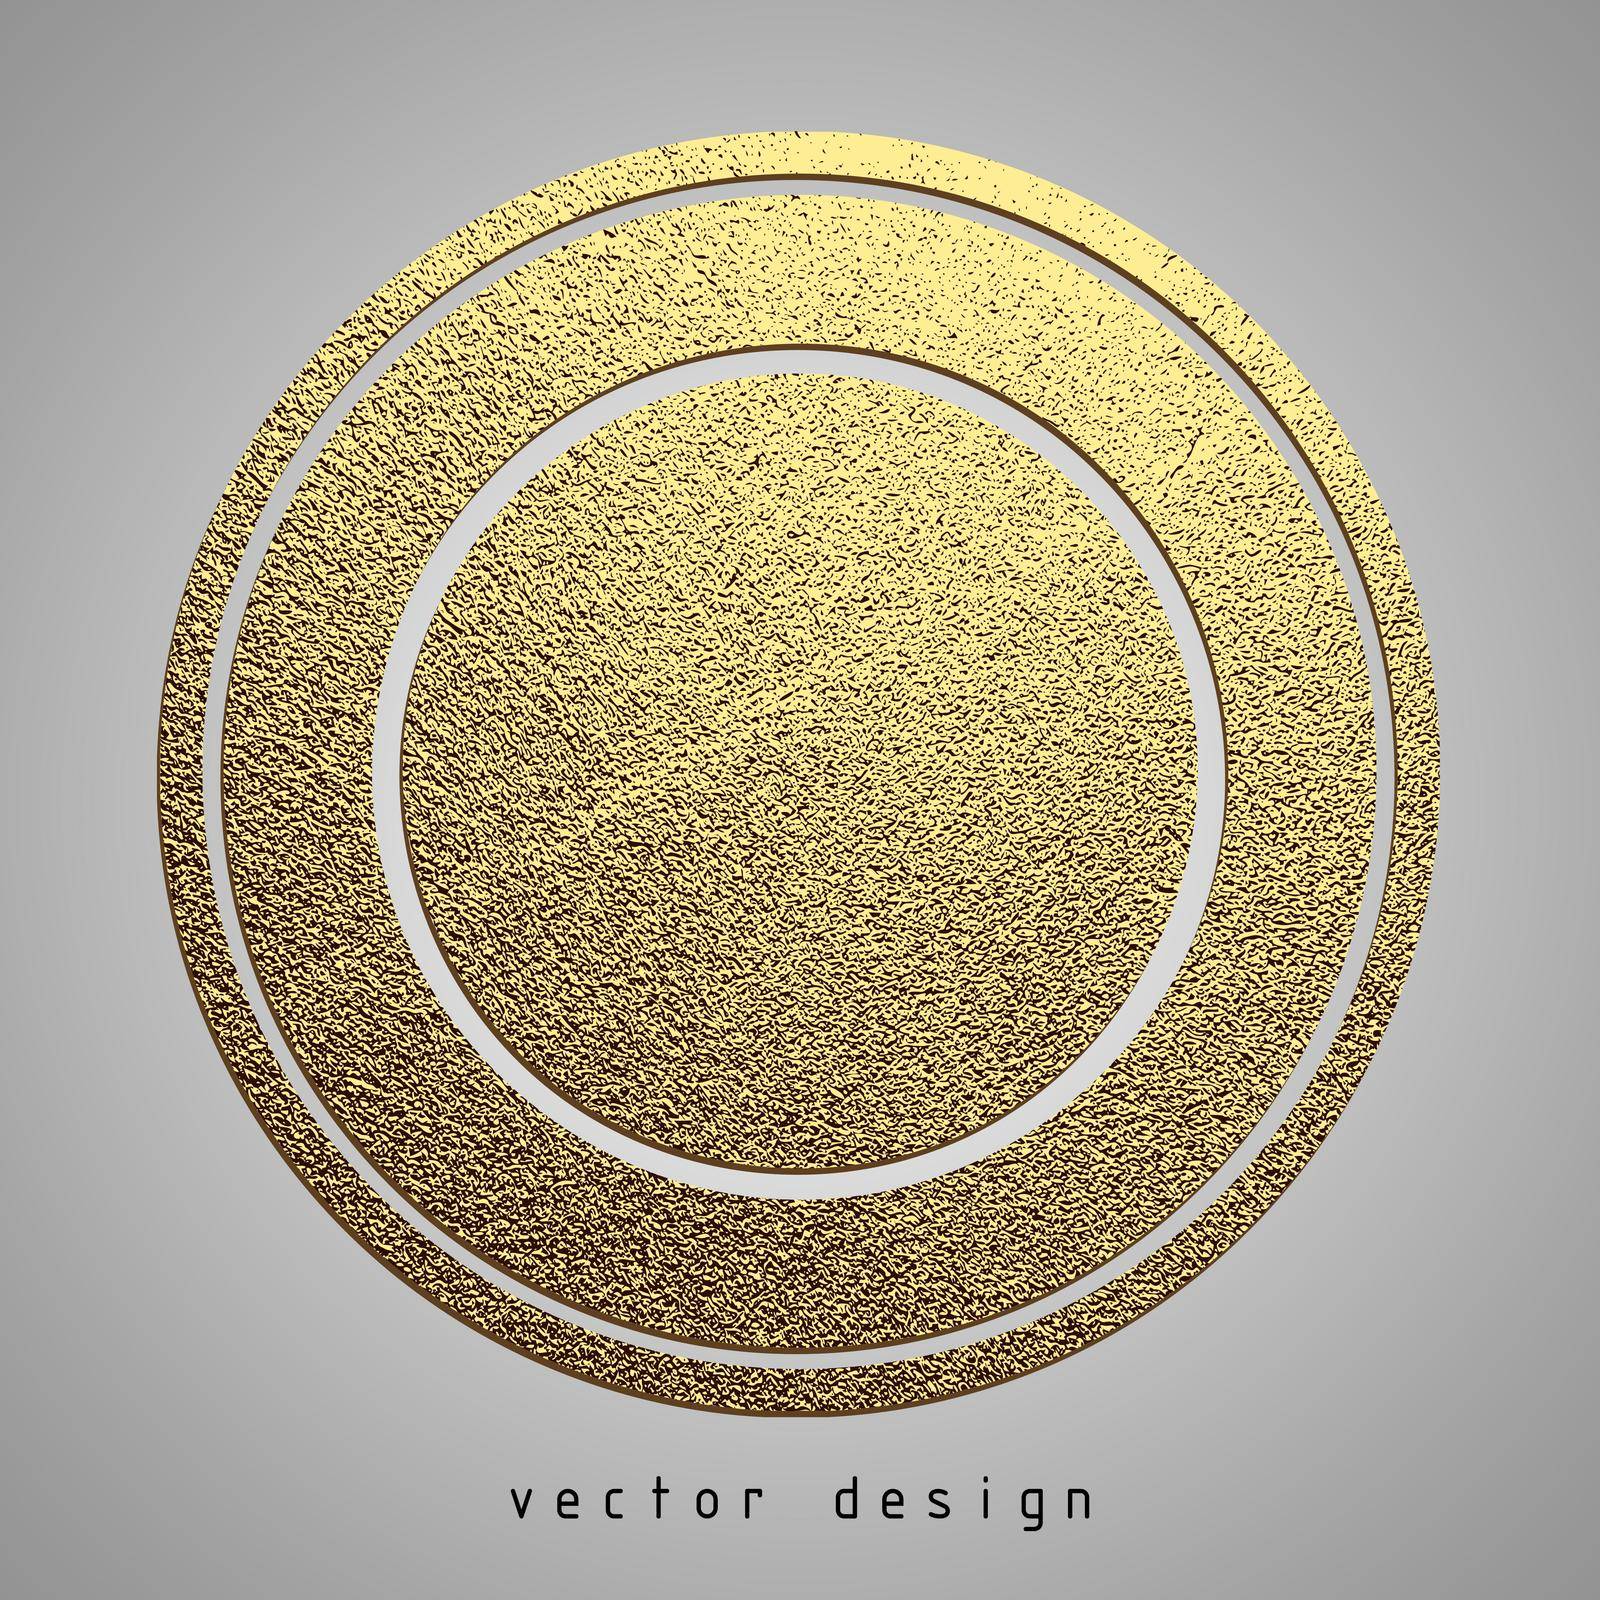 Vector illustration. Gold rubber stamp. Luxury golden vintage border.